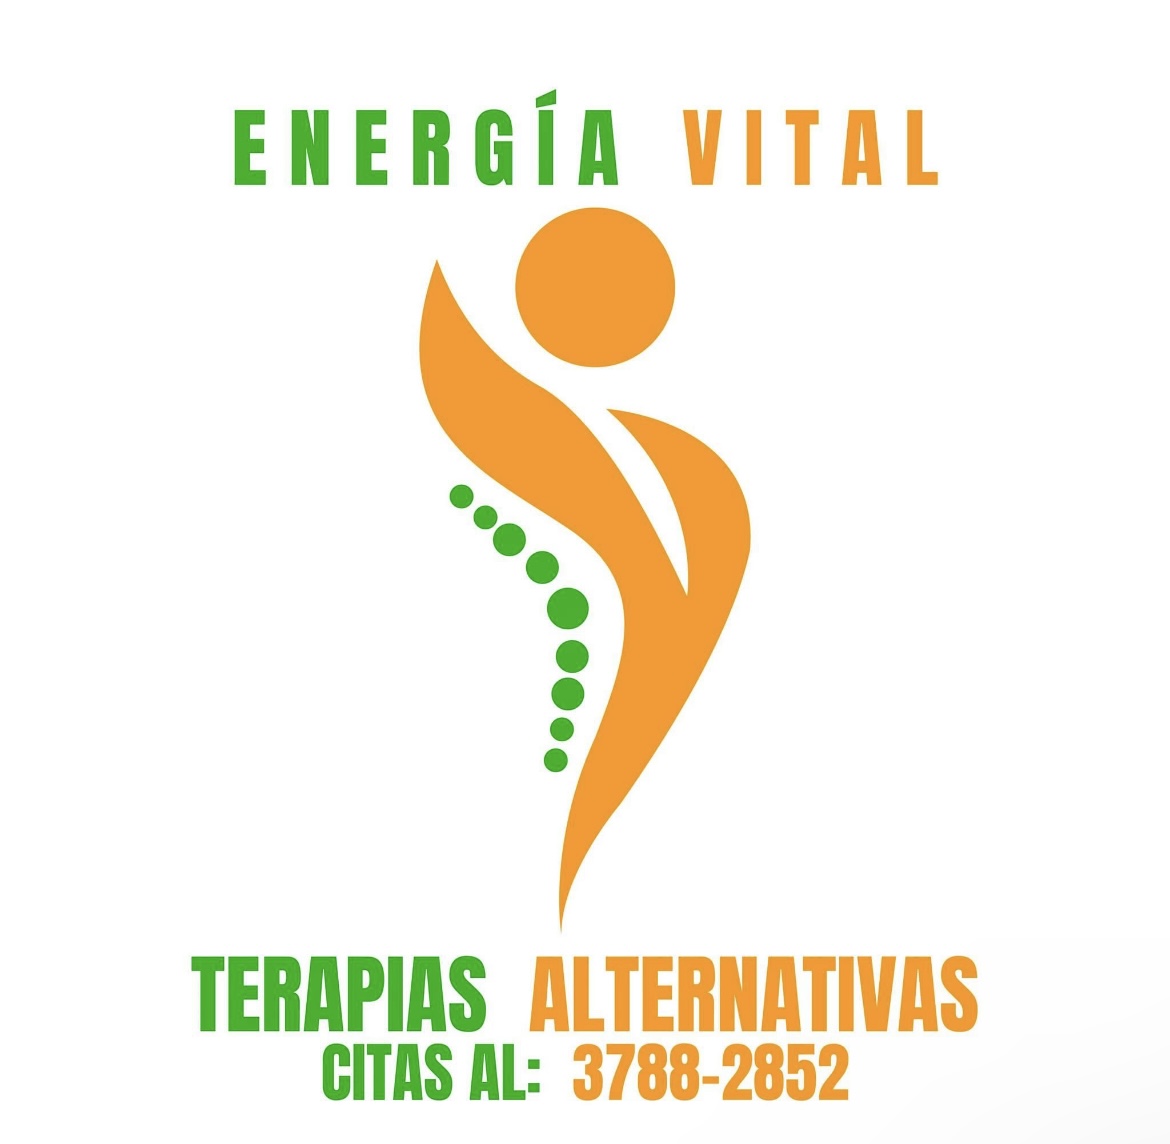 Energia vital terapias alternativas